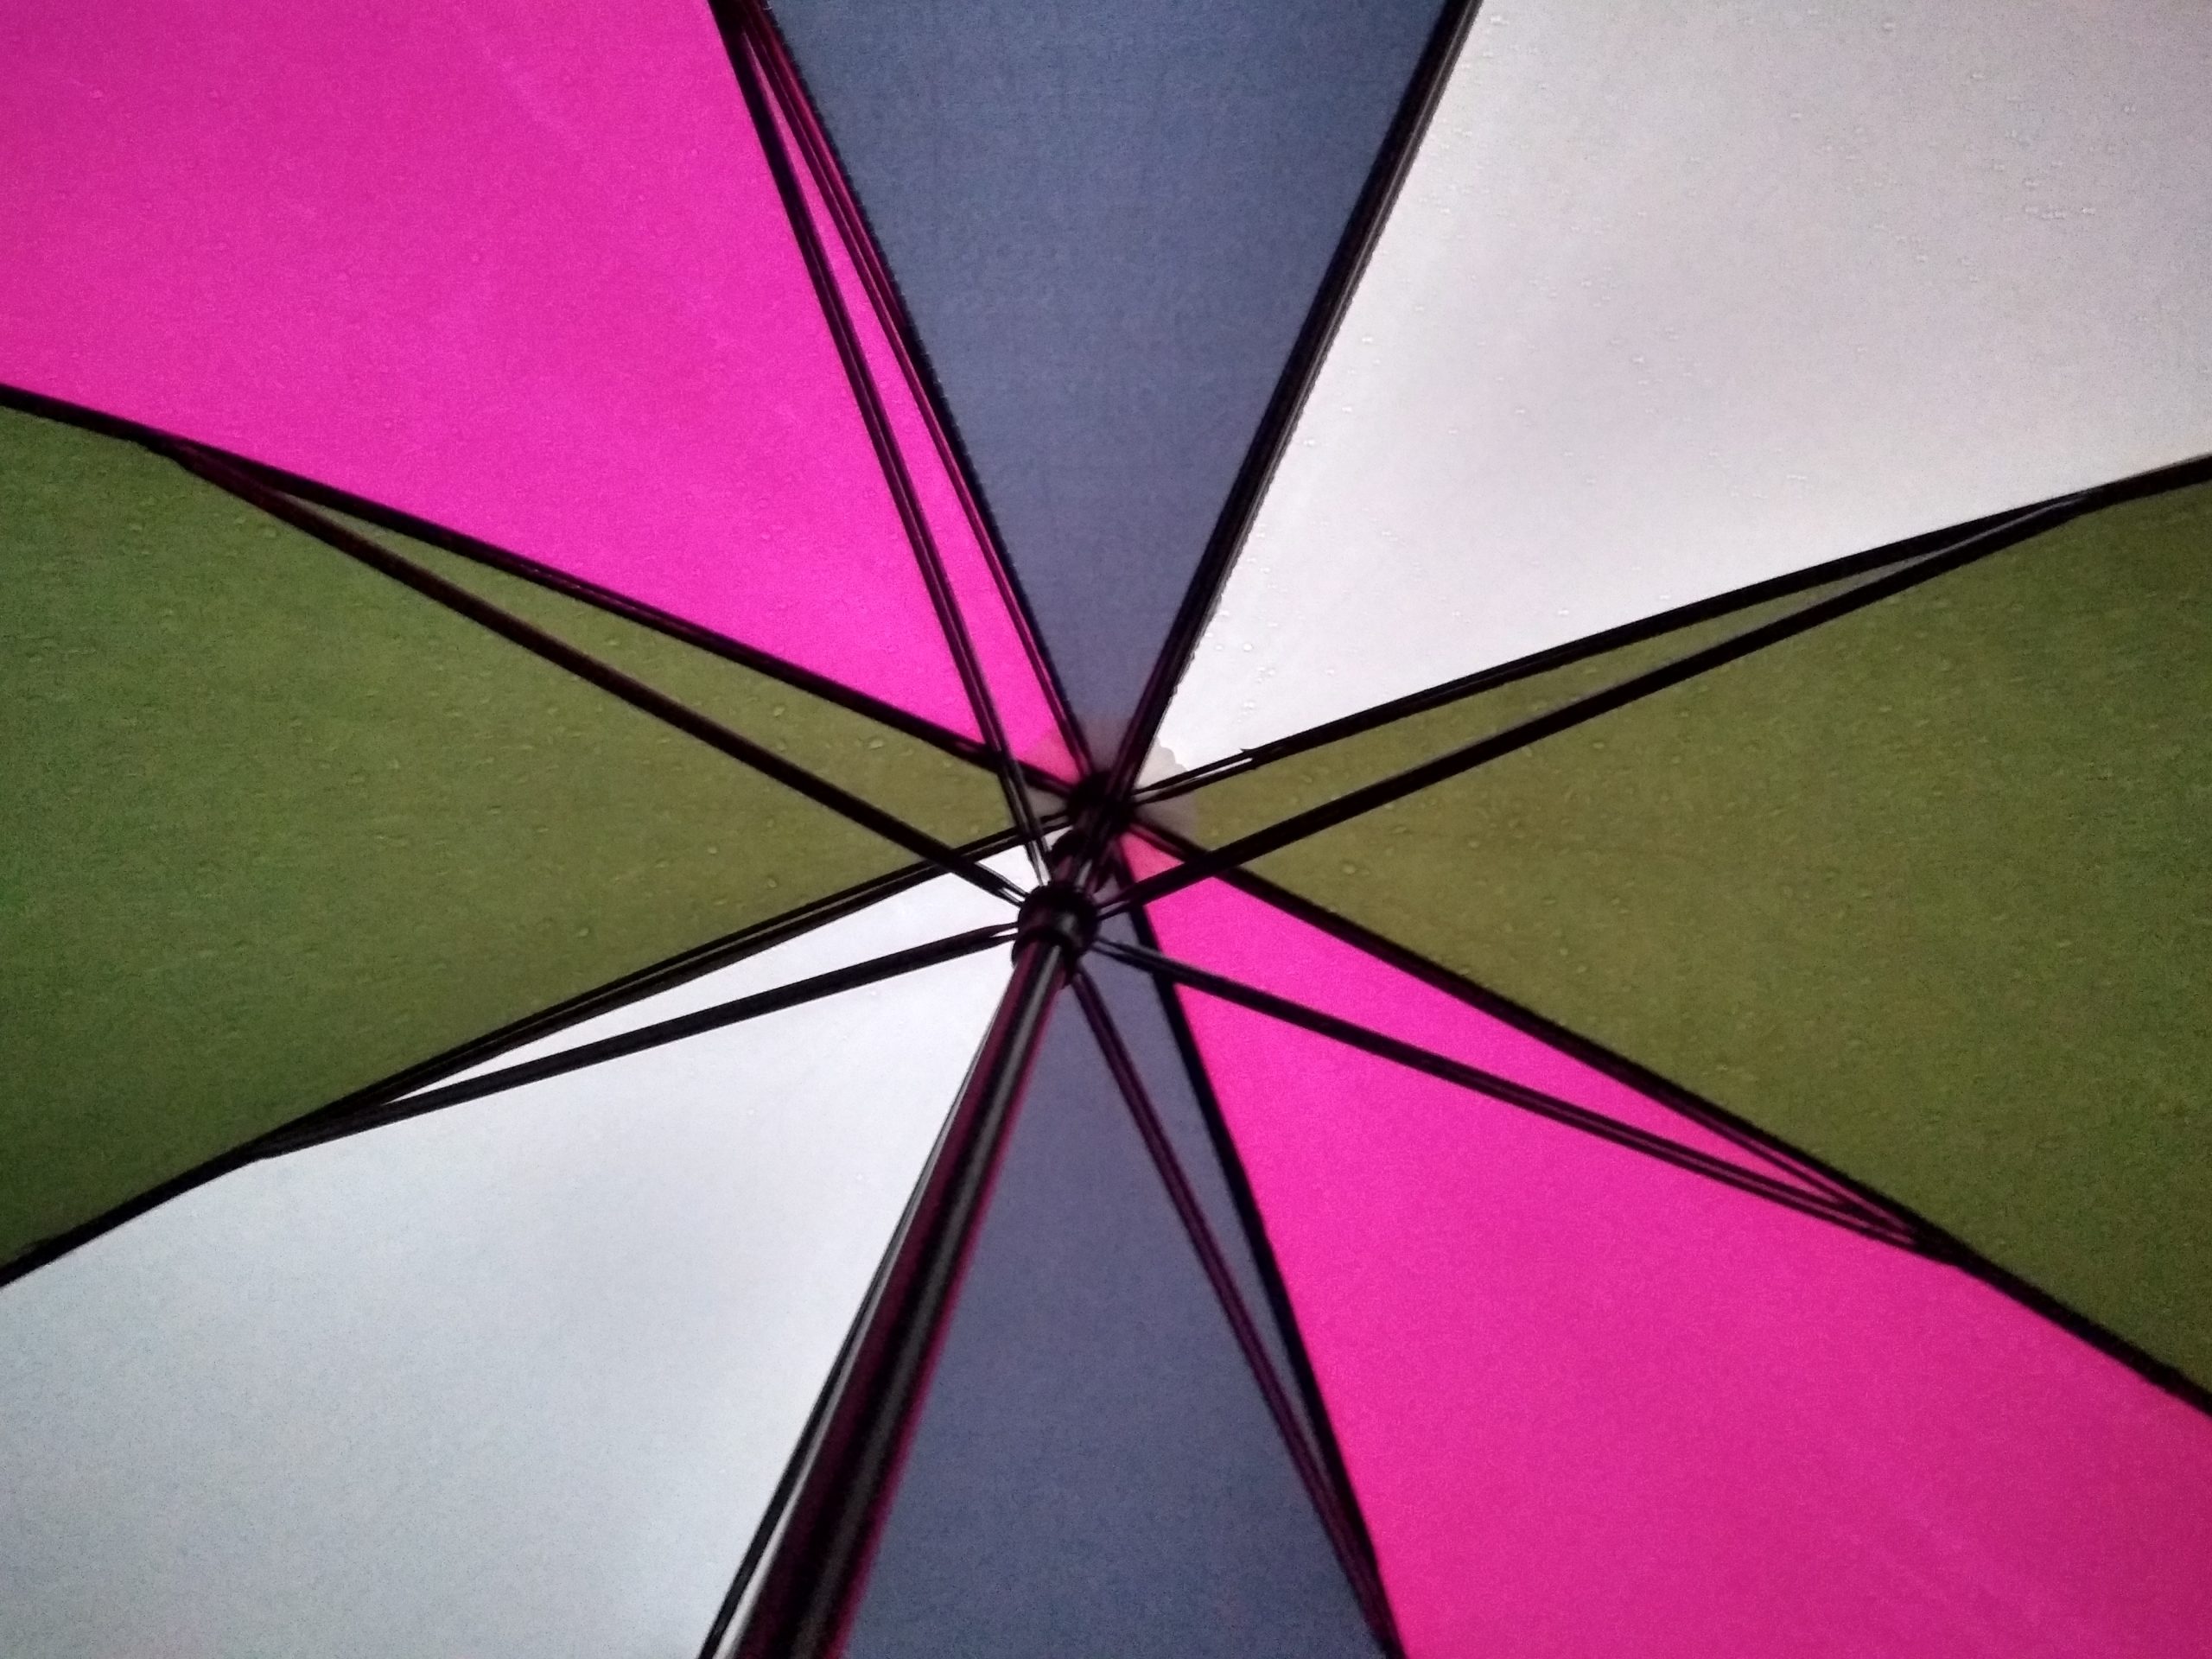 Inside an umbrella